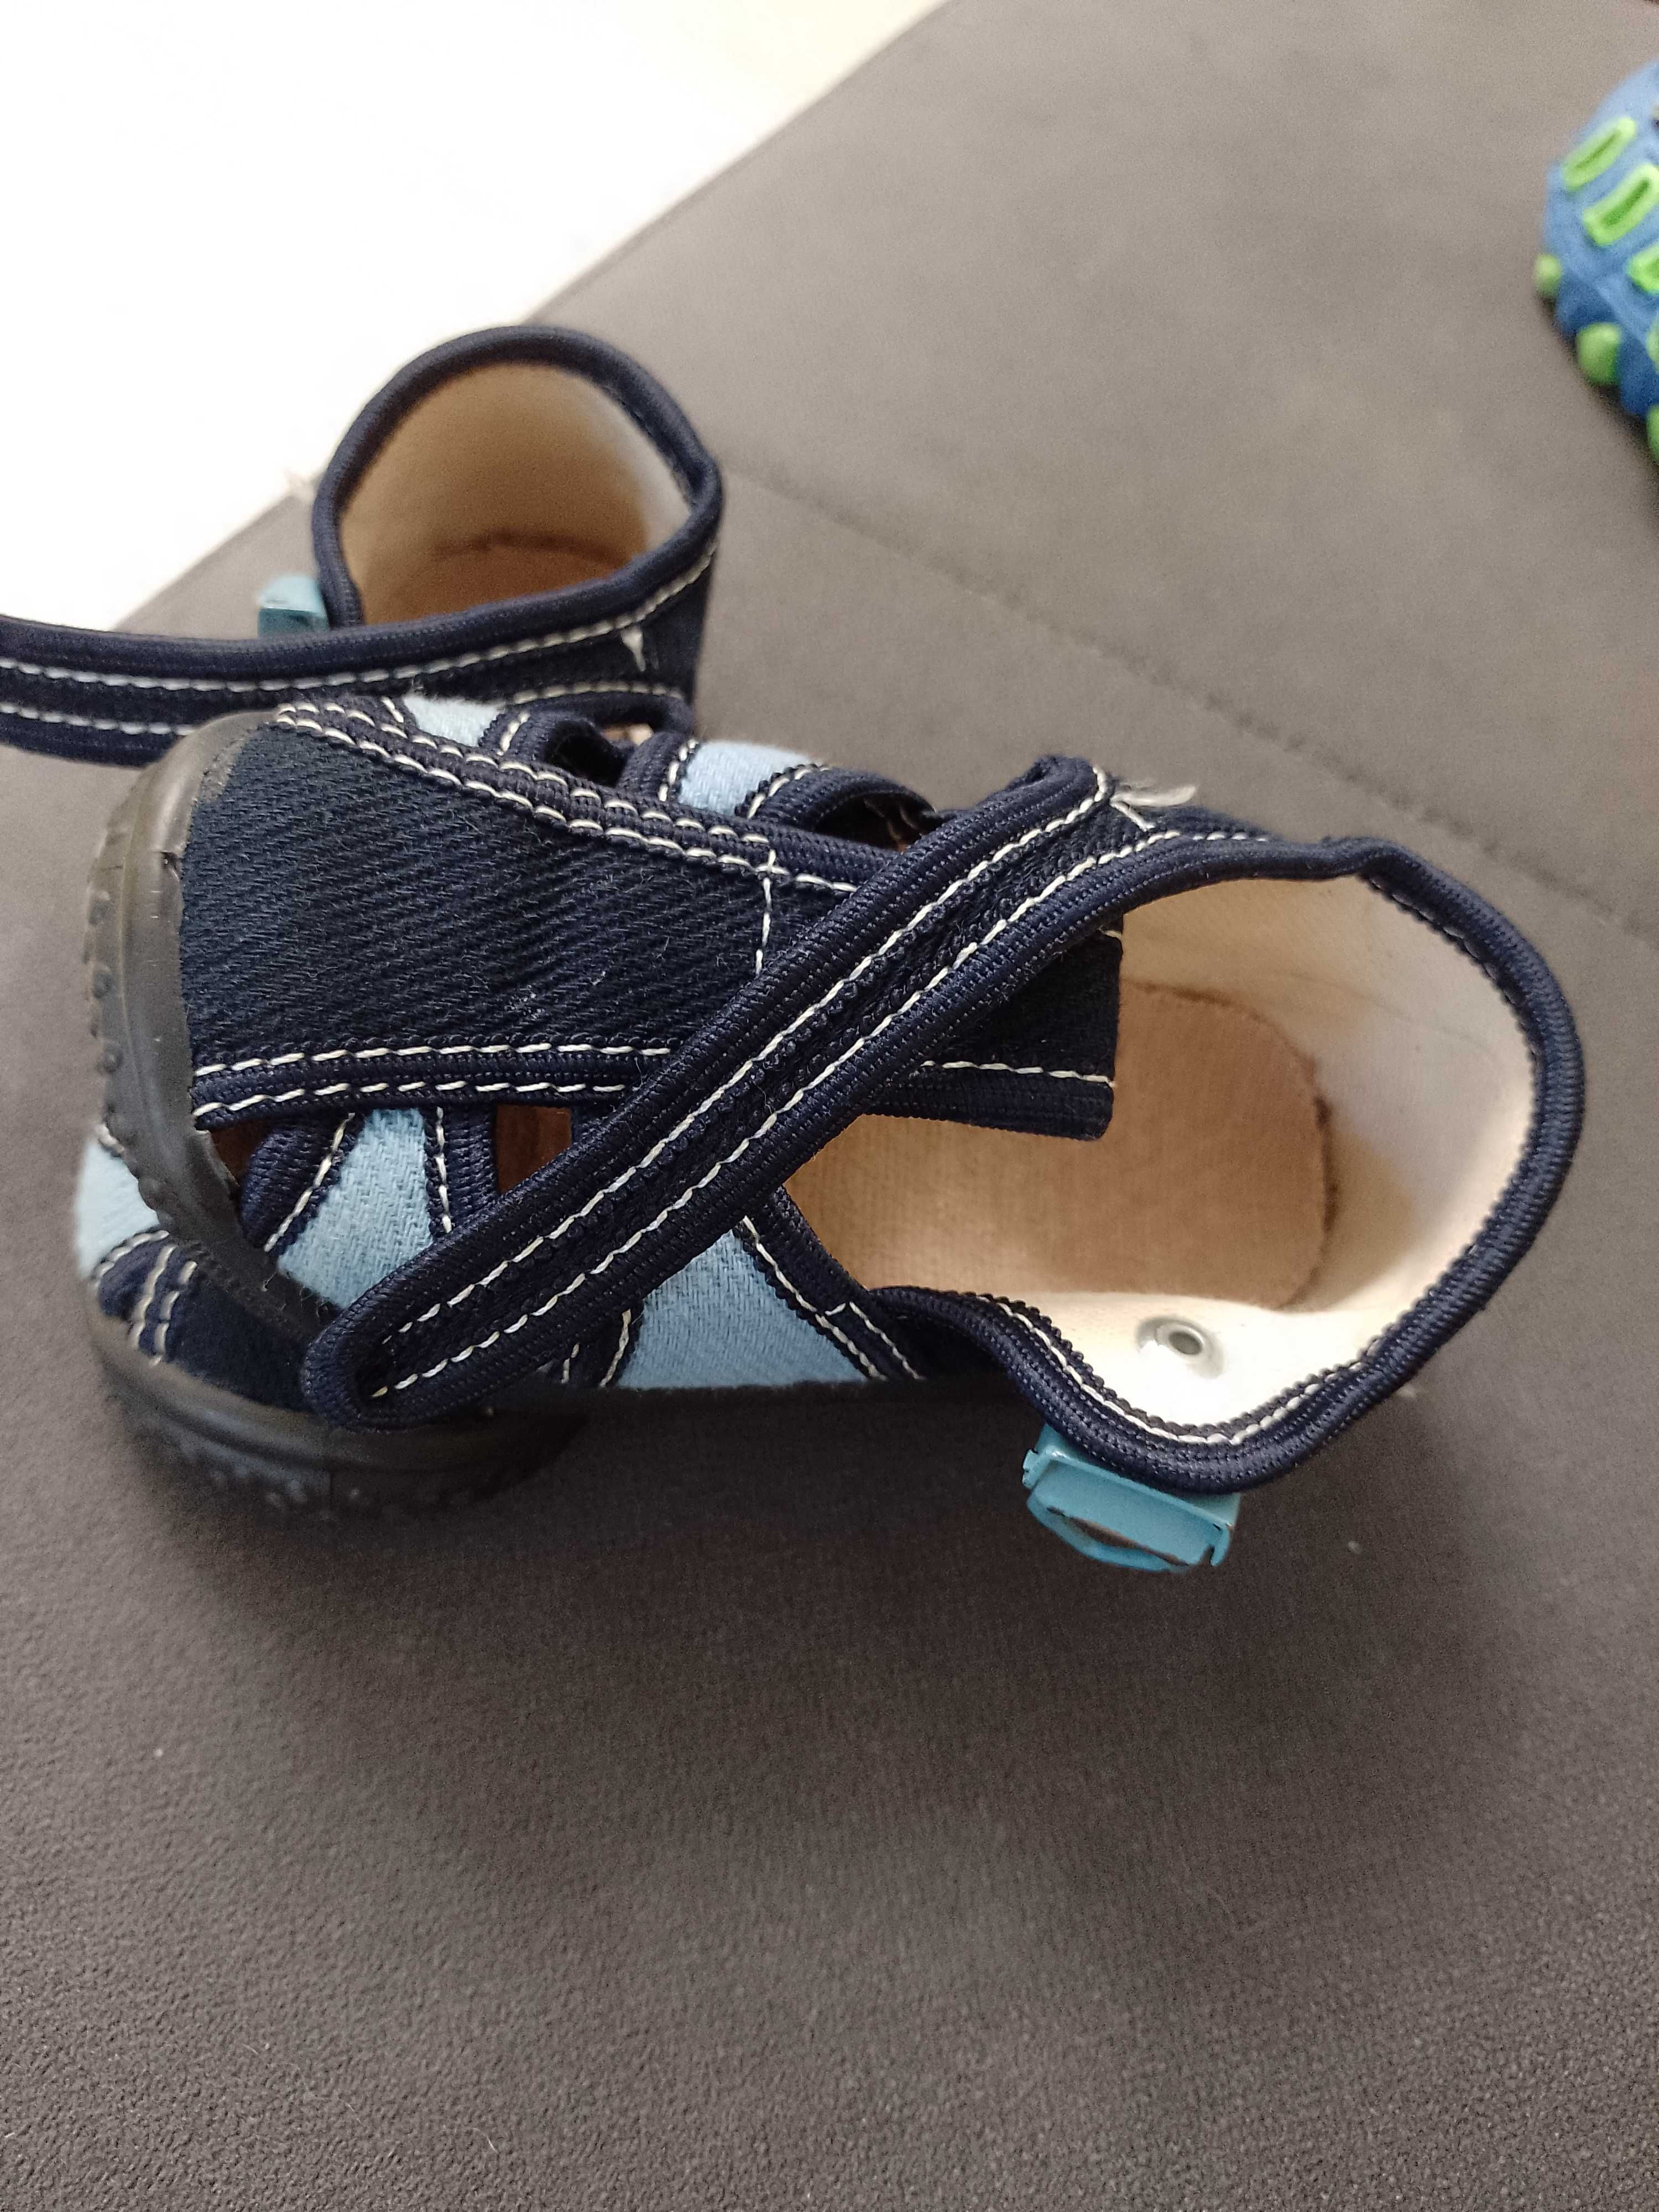 Бебешки сандали, кроксове и обувчици за ясла